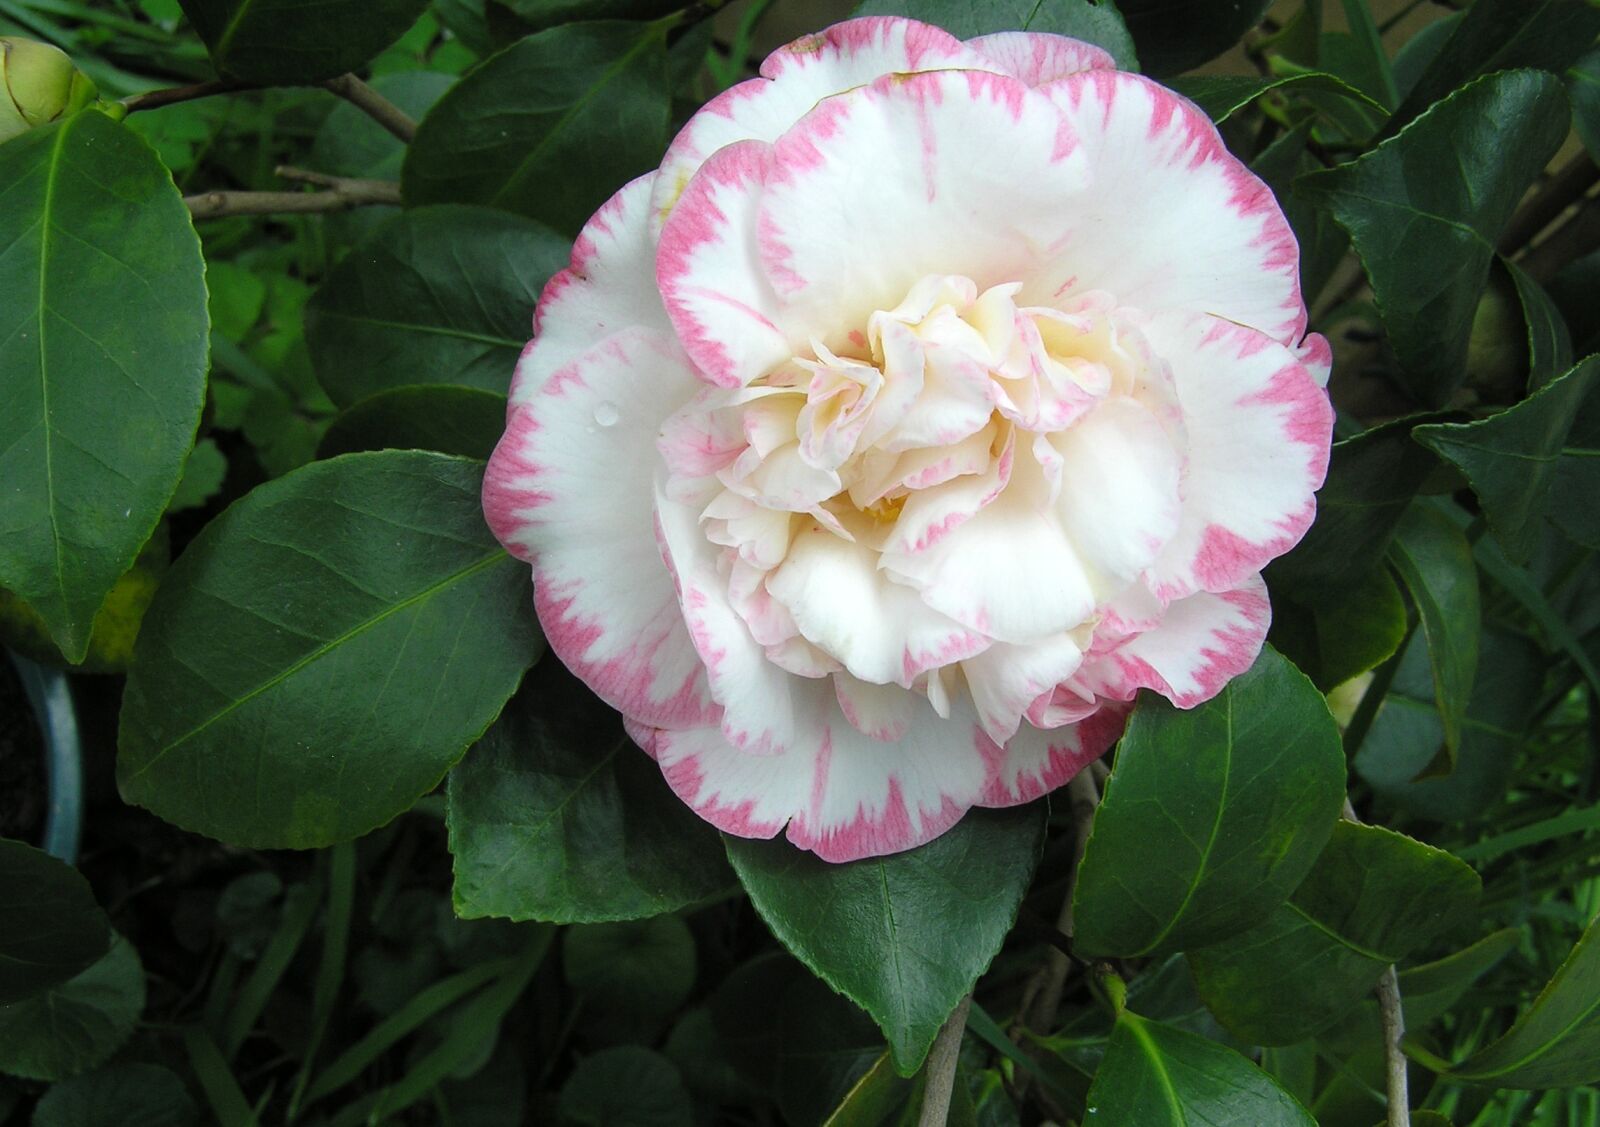 Olympus C750UZ sample photo. Camellia, flower, white photography